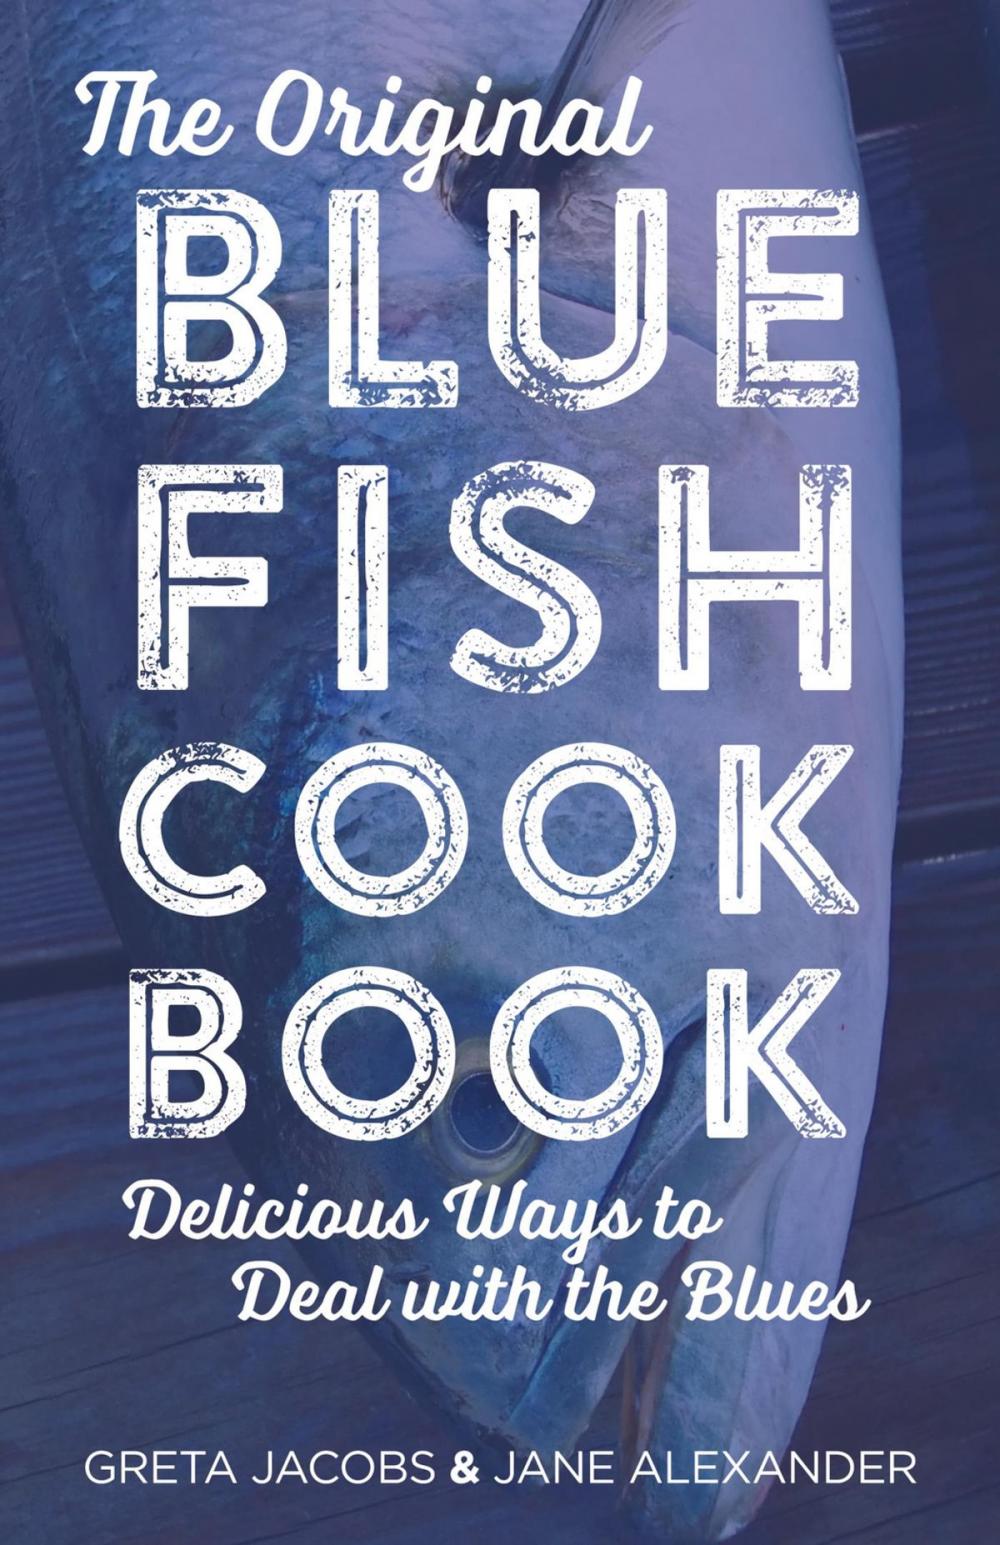 Big bigCover of The Original Bluefish Cookbook